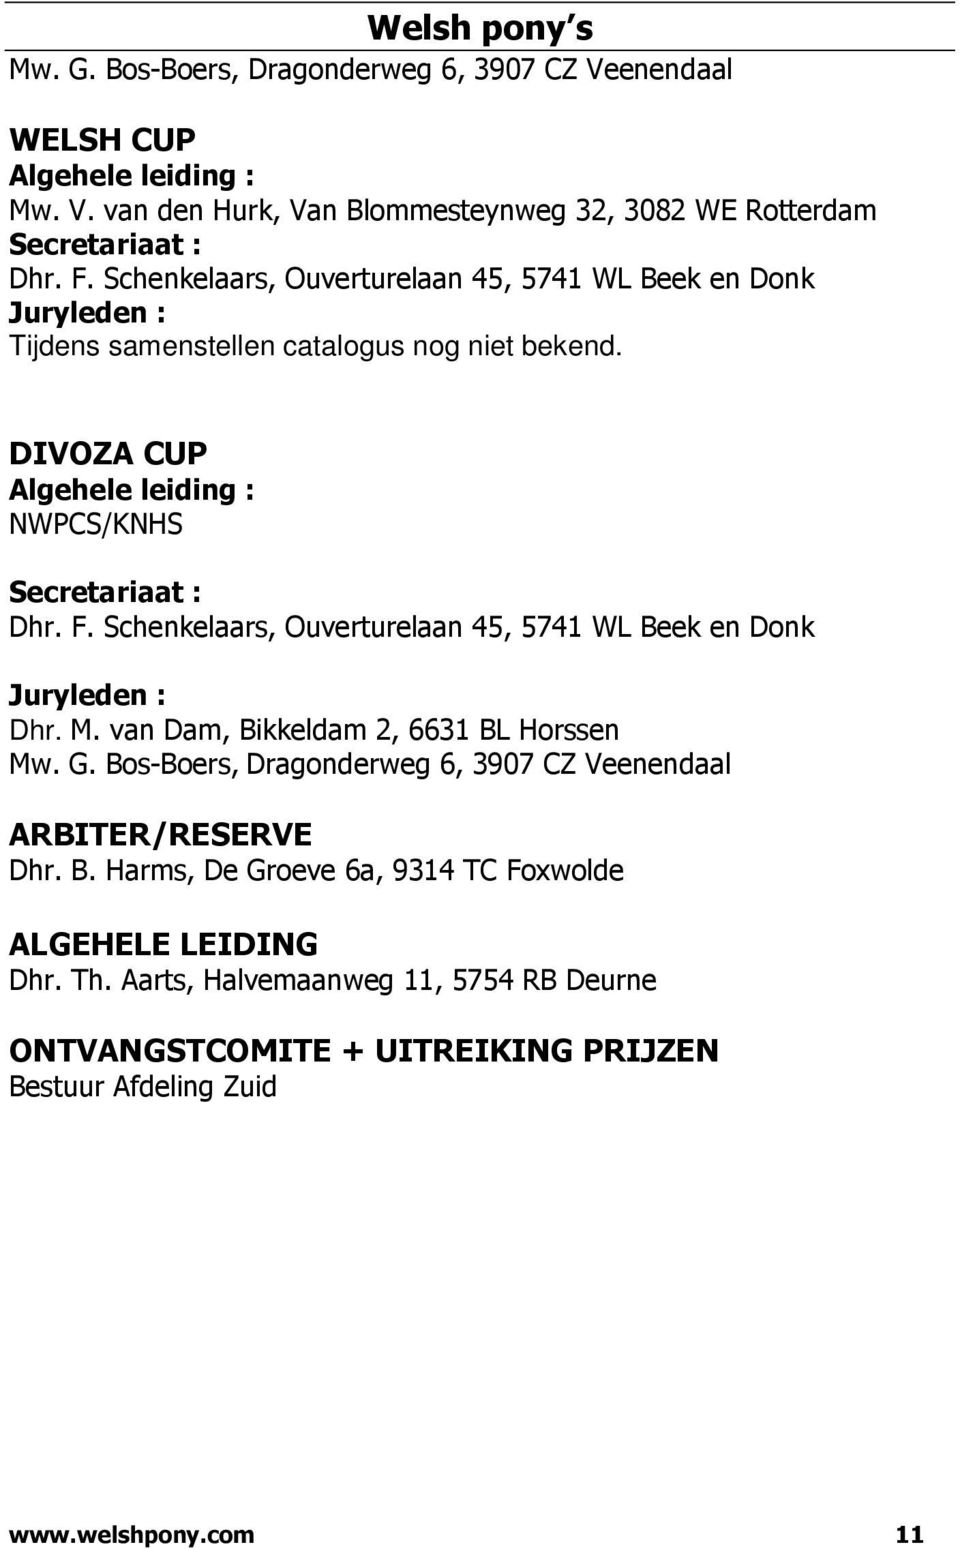 Schenkelaars, Ouverturelaan 45, 5741 WL Beek en Donk Juryleden : Dhr. M. van Dam, Bikkeldam 2, 6631 BL Horssen Mw. G.